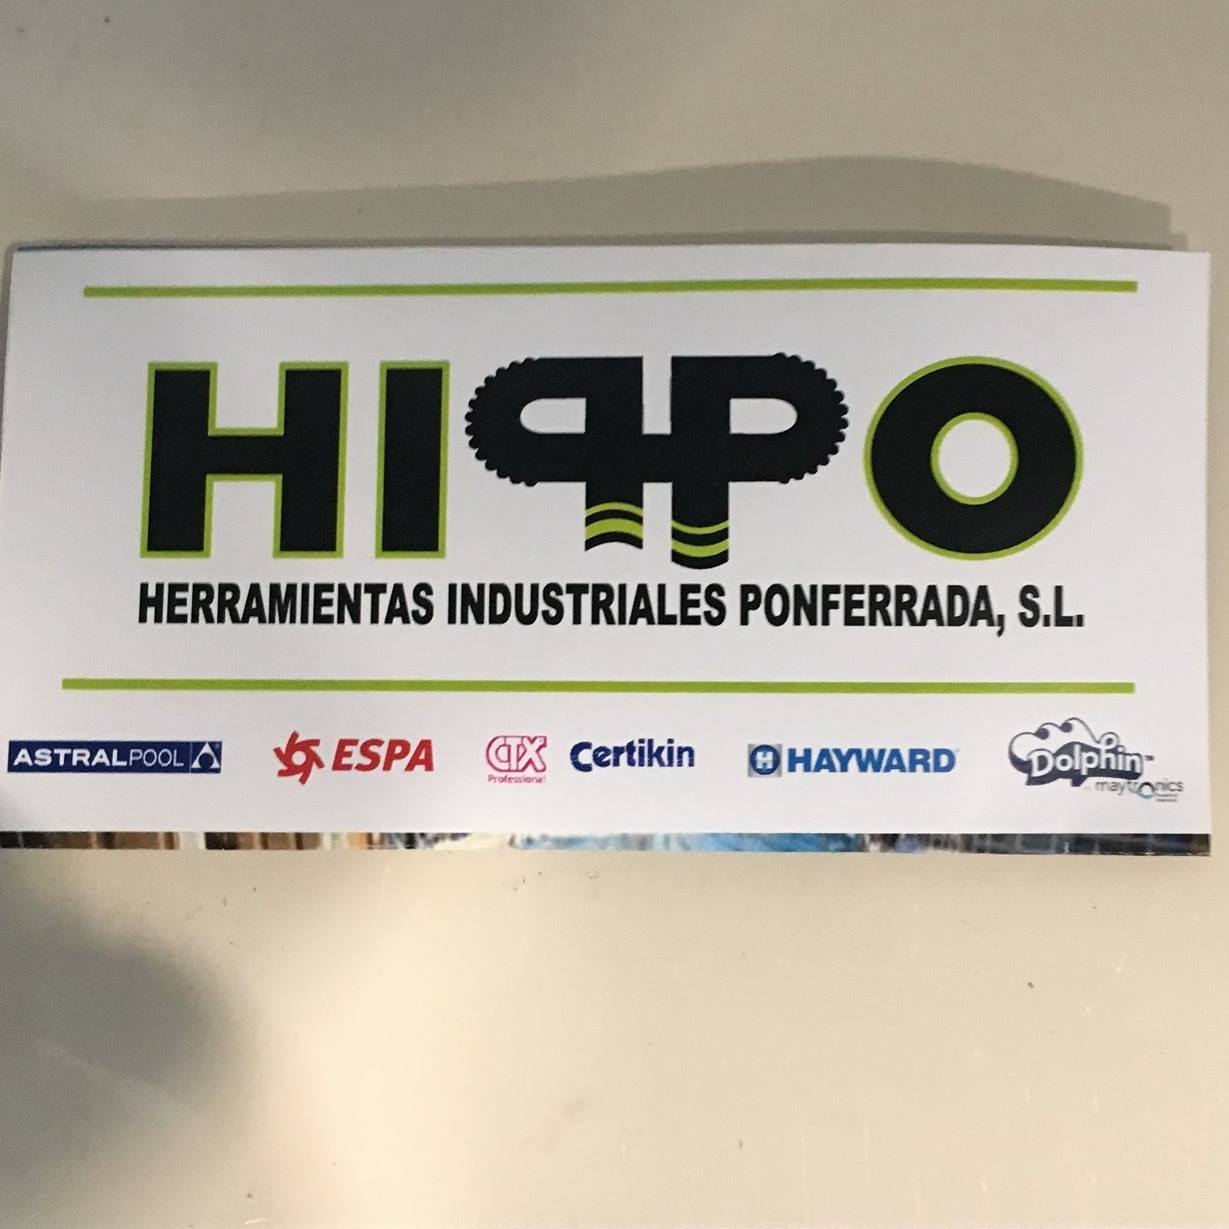 Ver detalles de la Empresa HERRAMIENTAS INDUSTRIALES PONFERRADA HIPPO